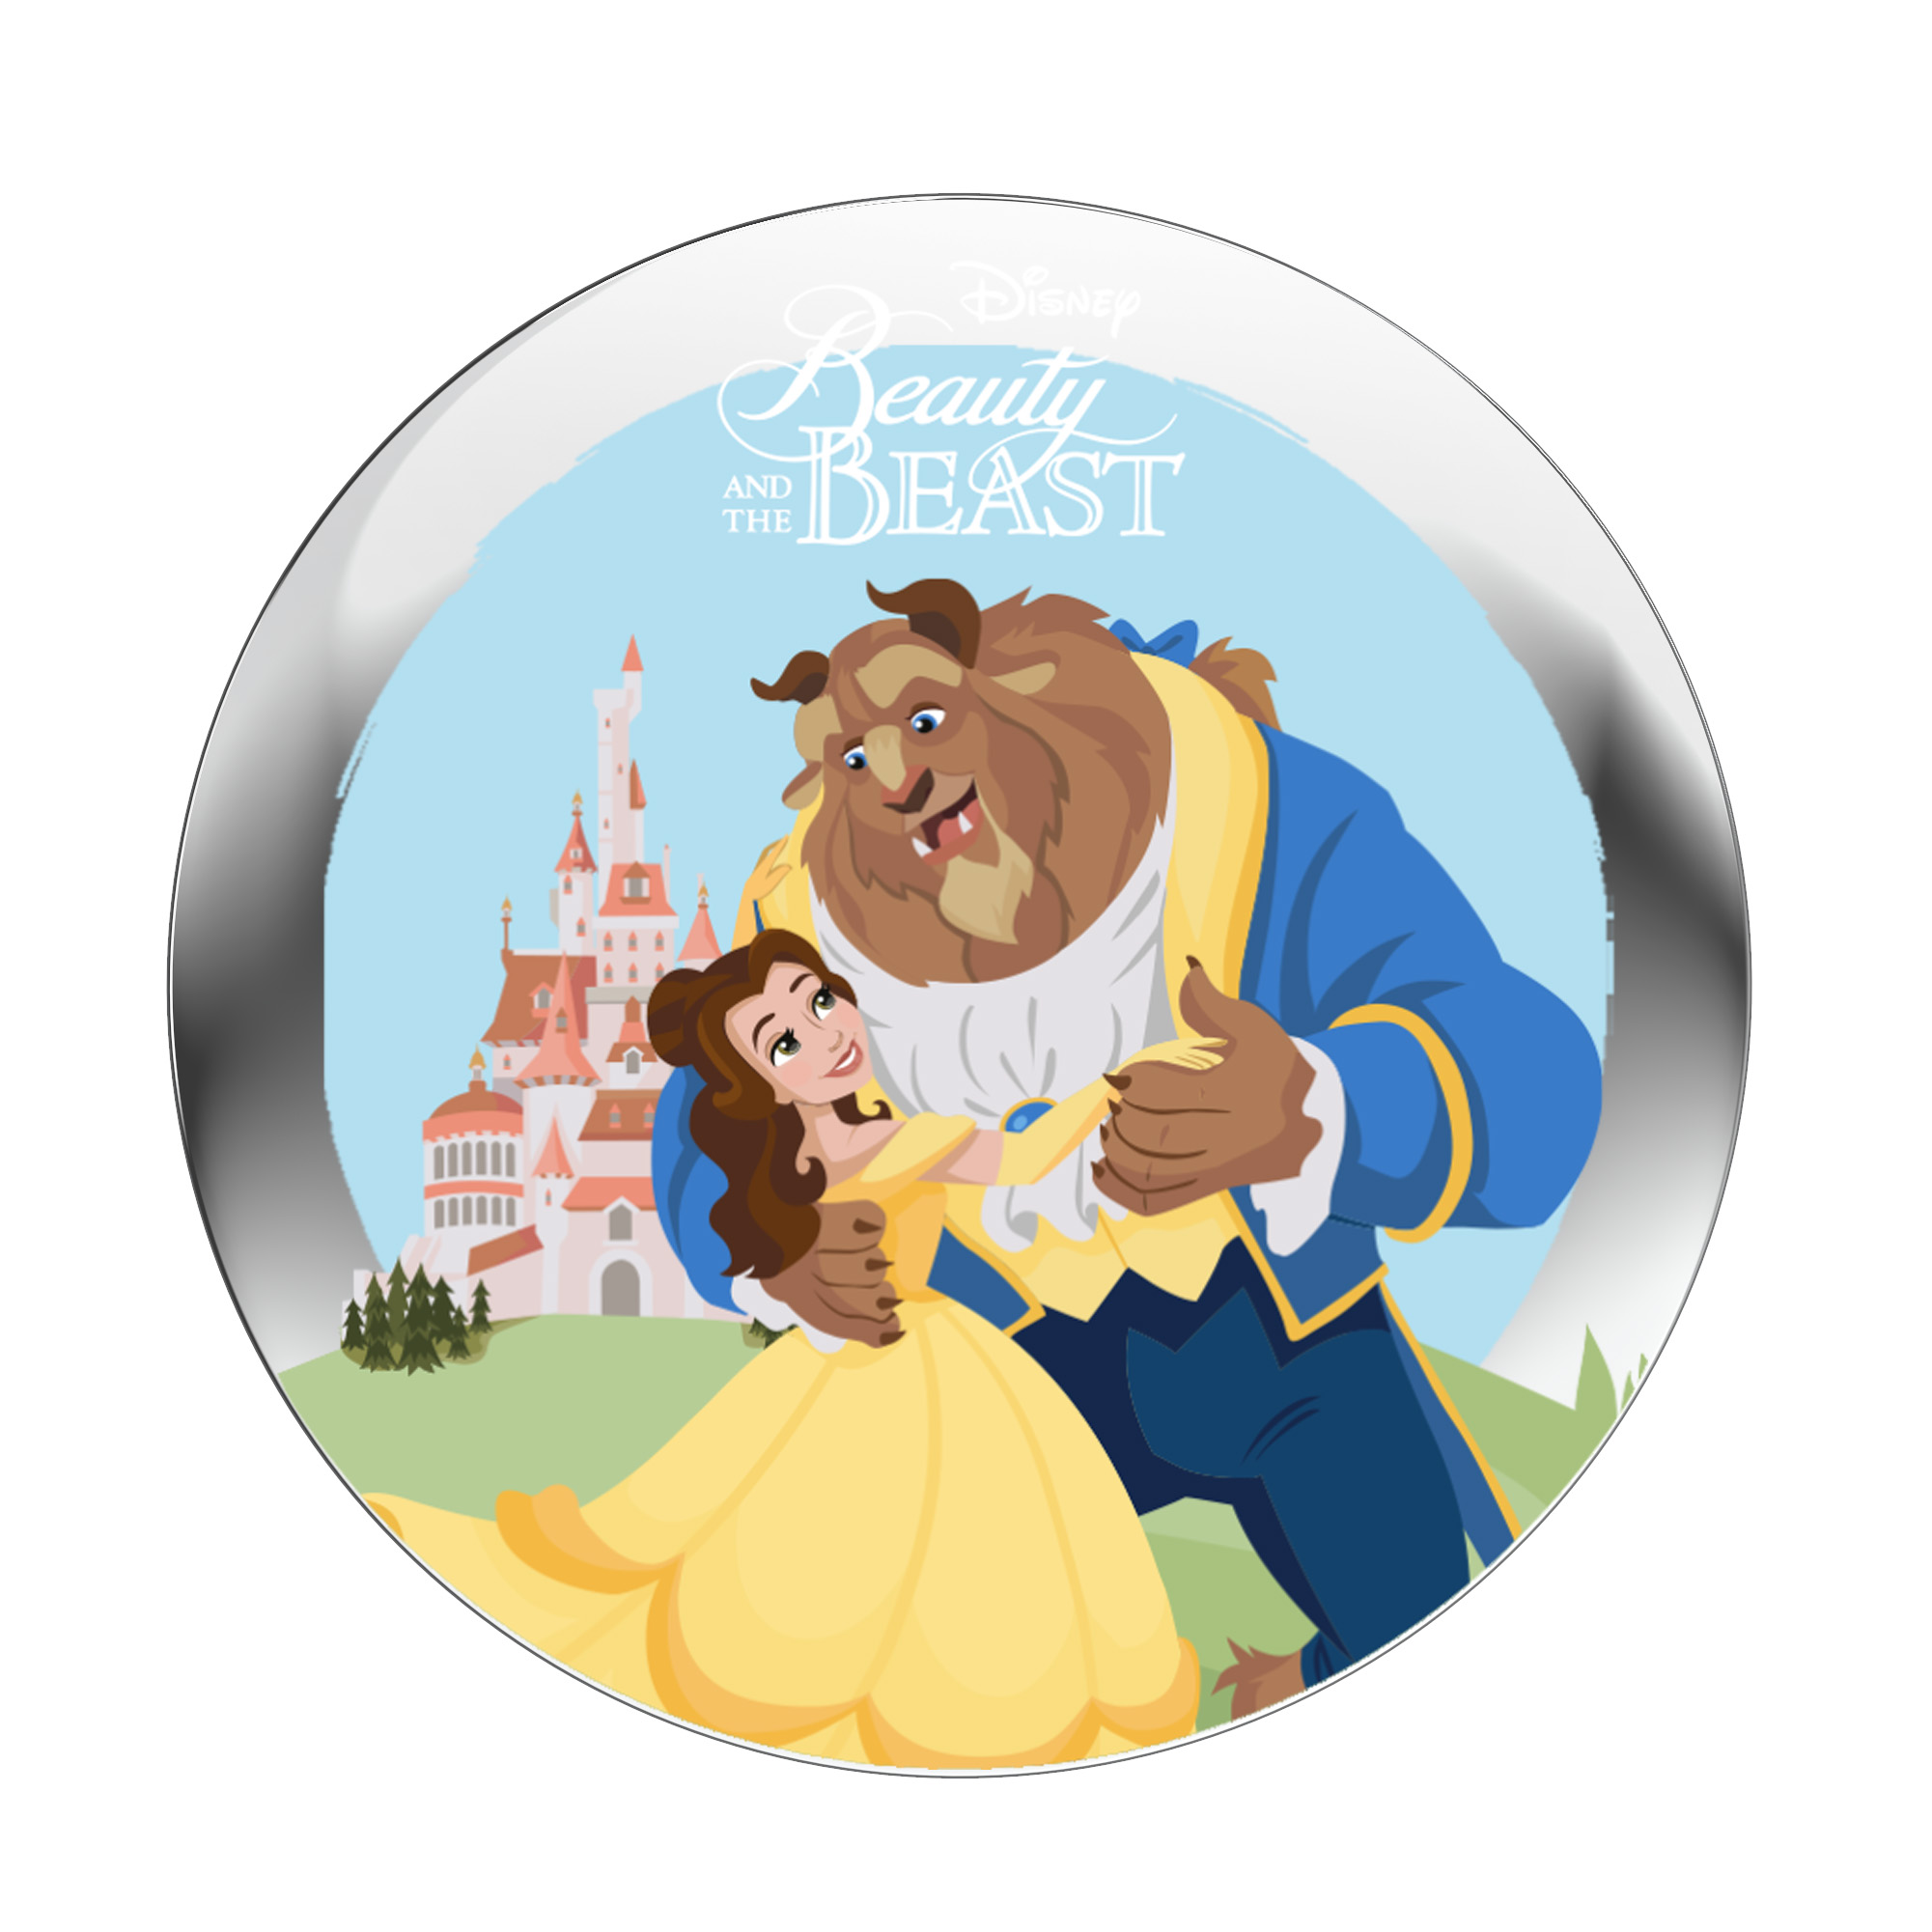  StoryShield - Disney das (Download Audiogeschichte Schöne Audio Track) StoryPhones Biest\' für \'Die - – und